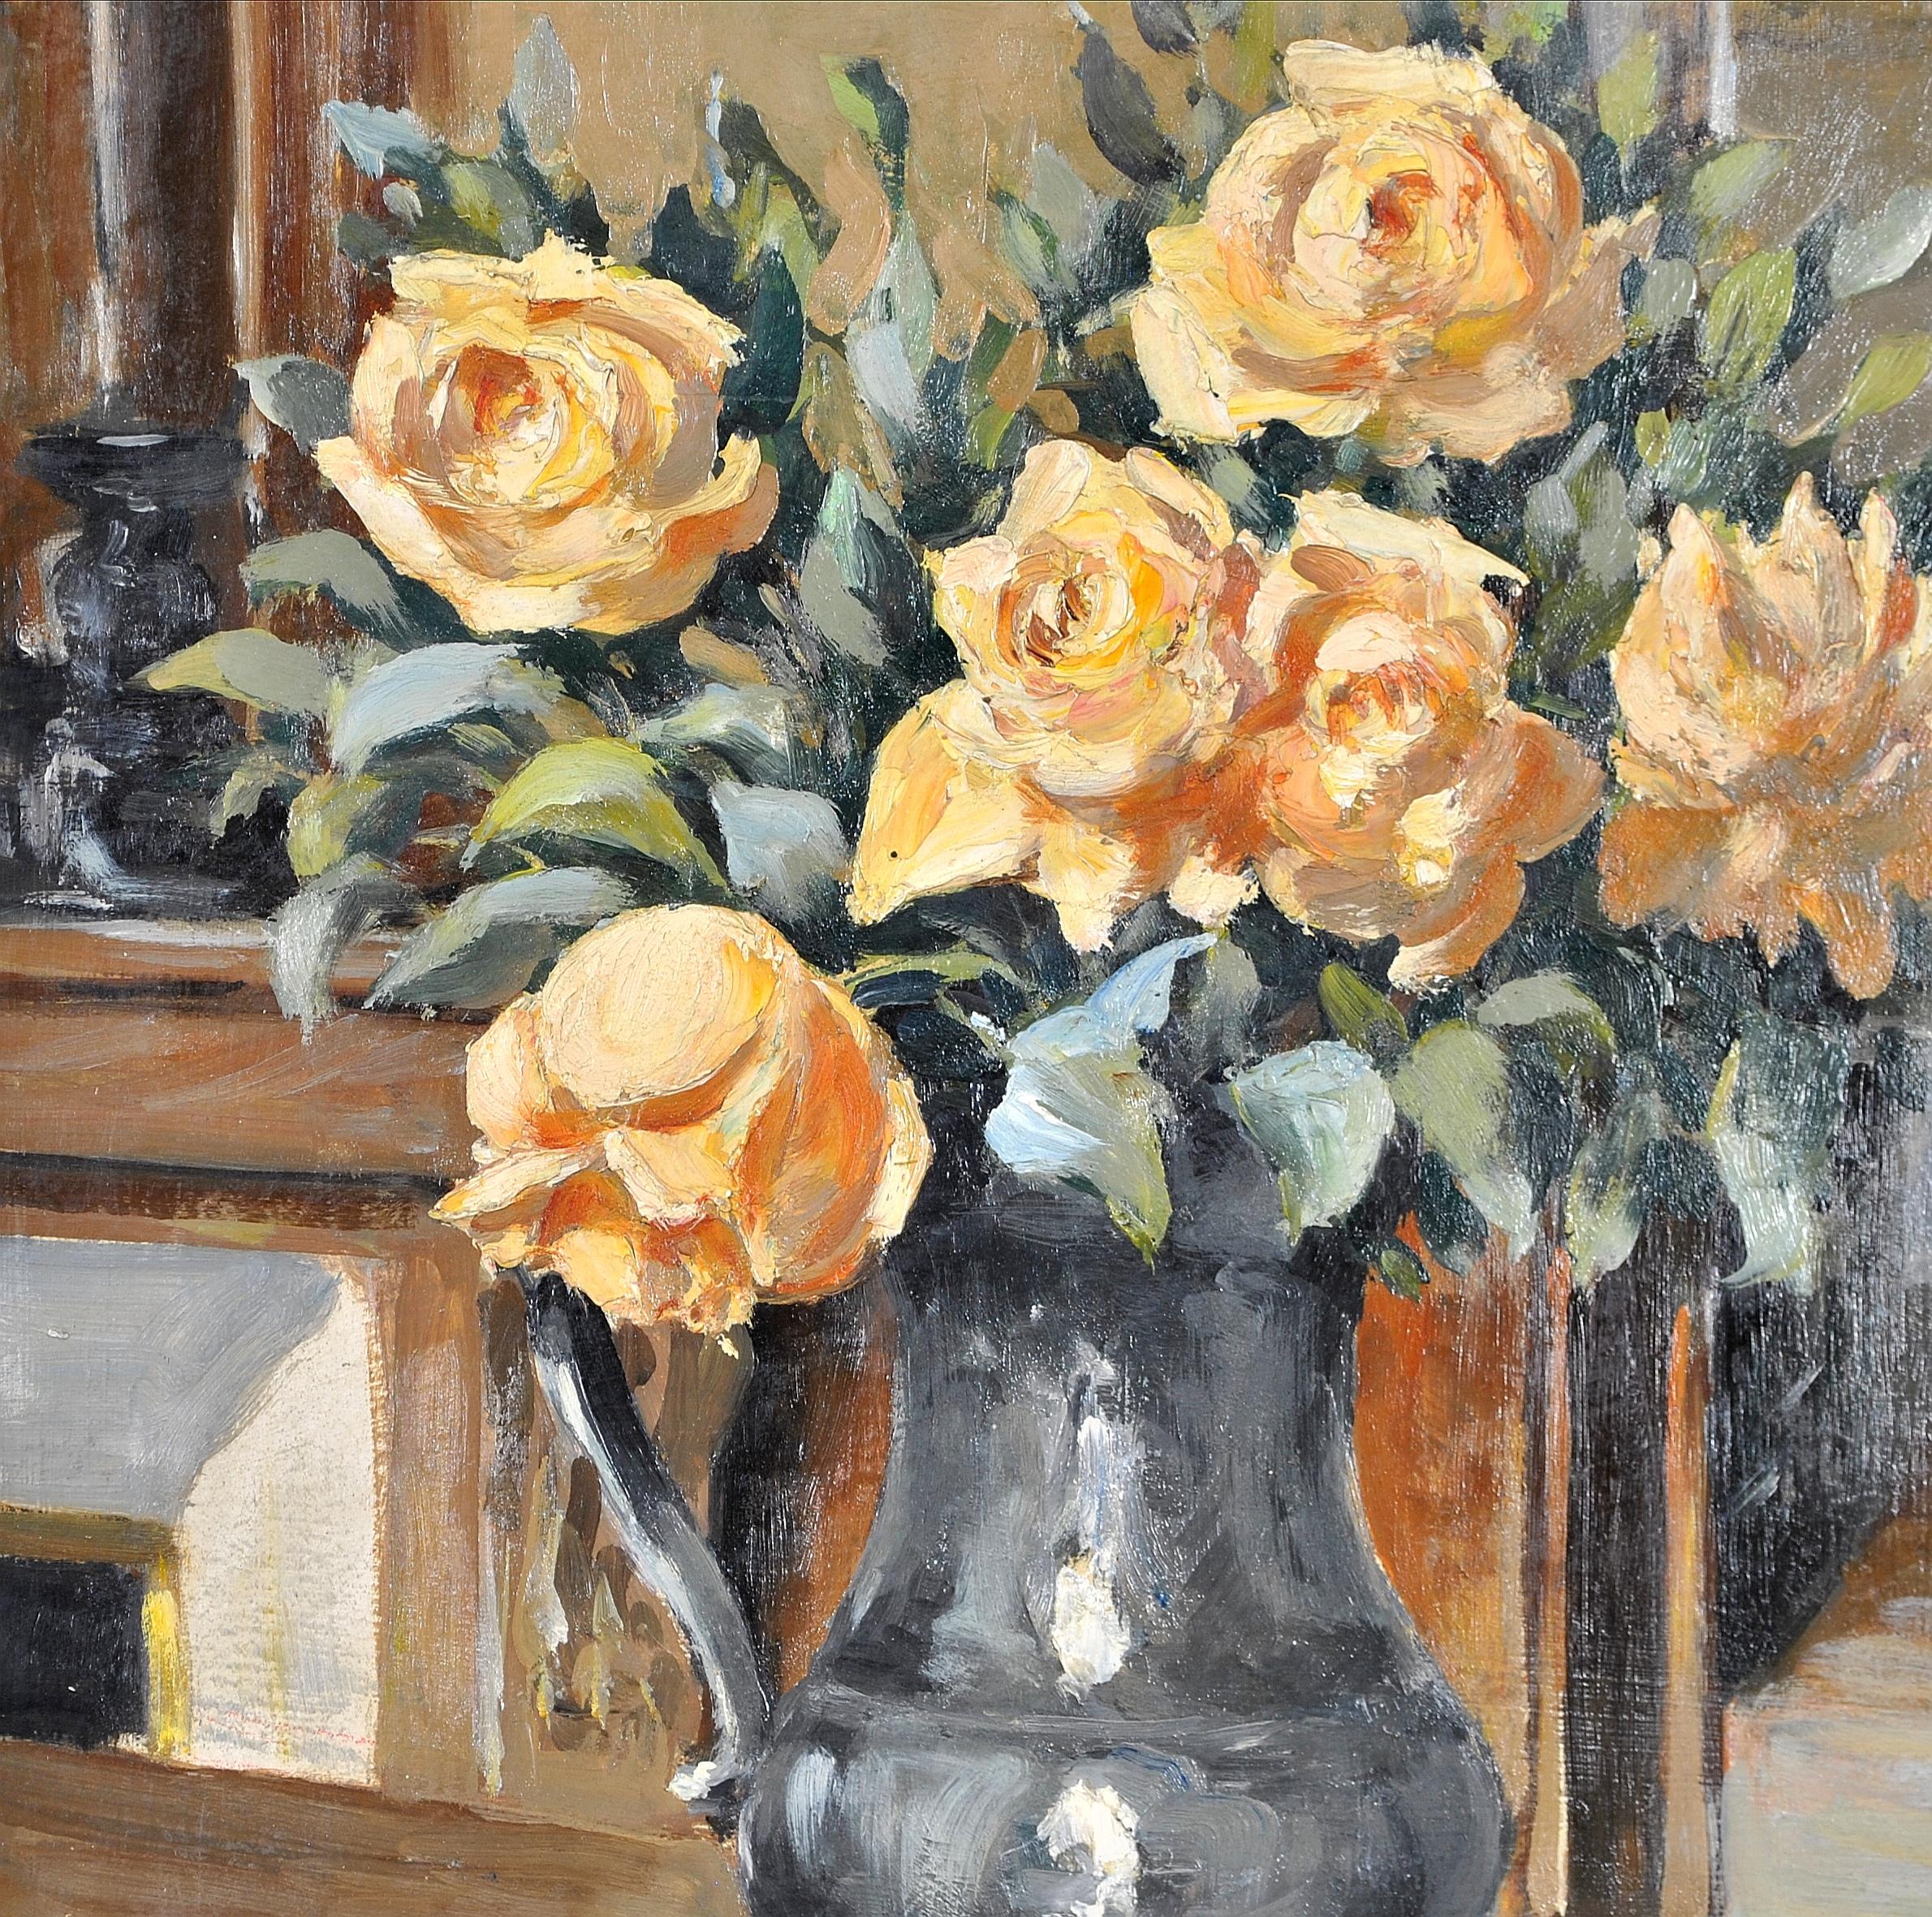 Rosen in einem Krug - 1920er Jahre Französisch Impressionist Antike Stillleben Ölgemälde (Beige), Still-Life Painting, von Early 20th Century French School